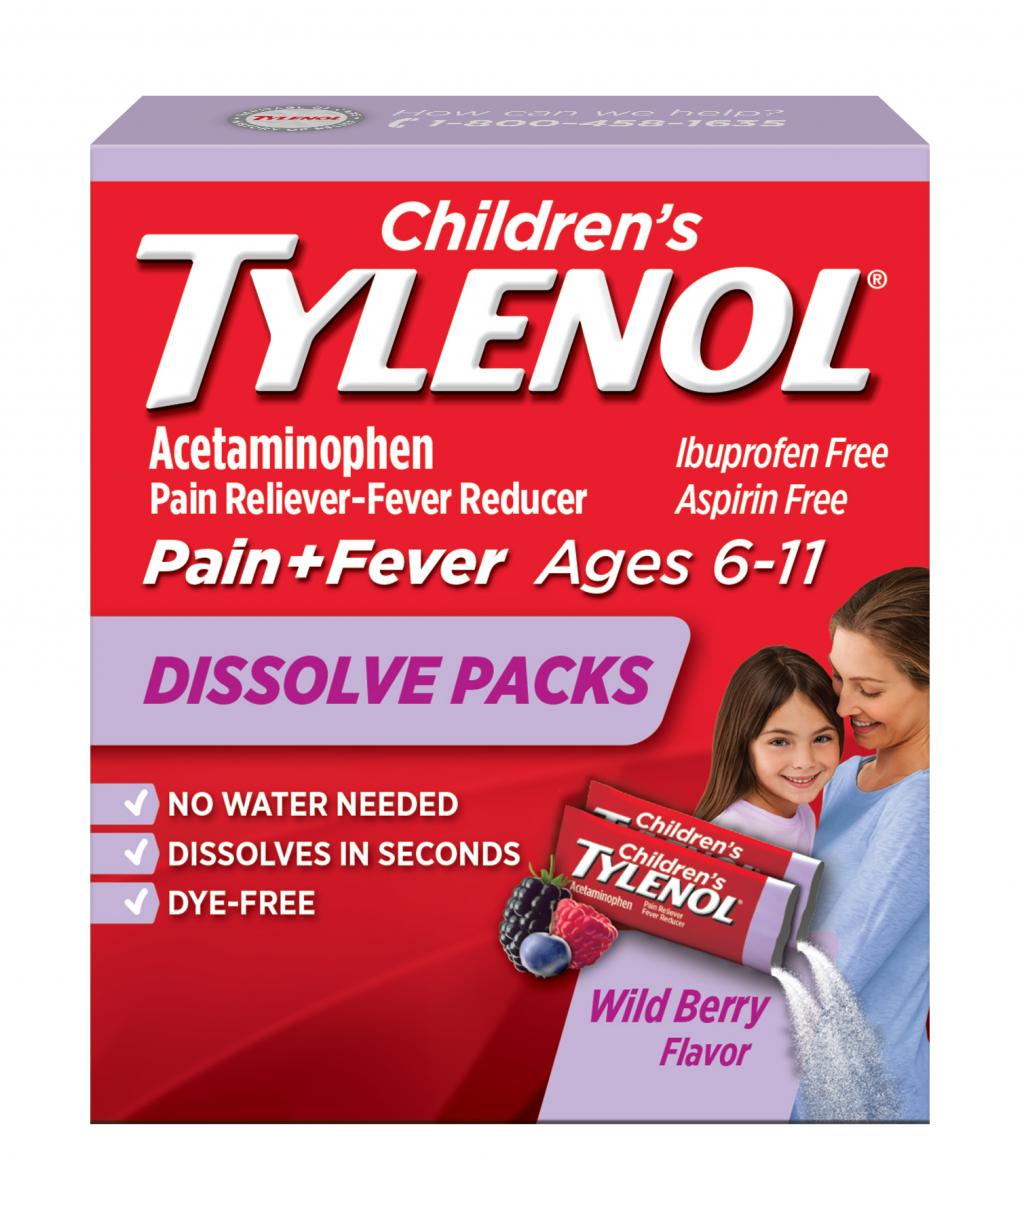 Children's TYLENOL® Acetaminophen Dissolve Packs for Pain & Fever